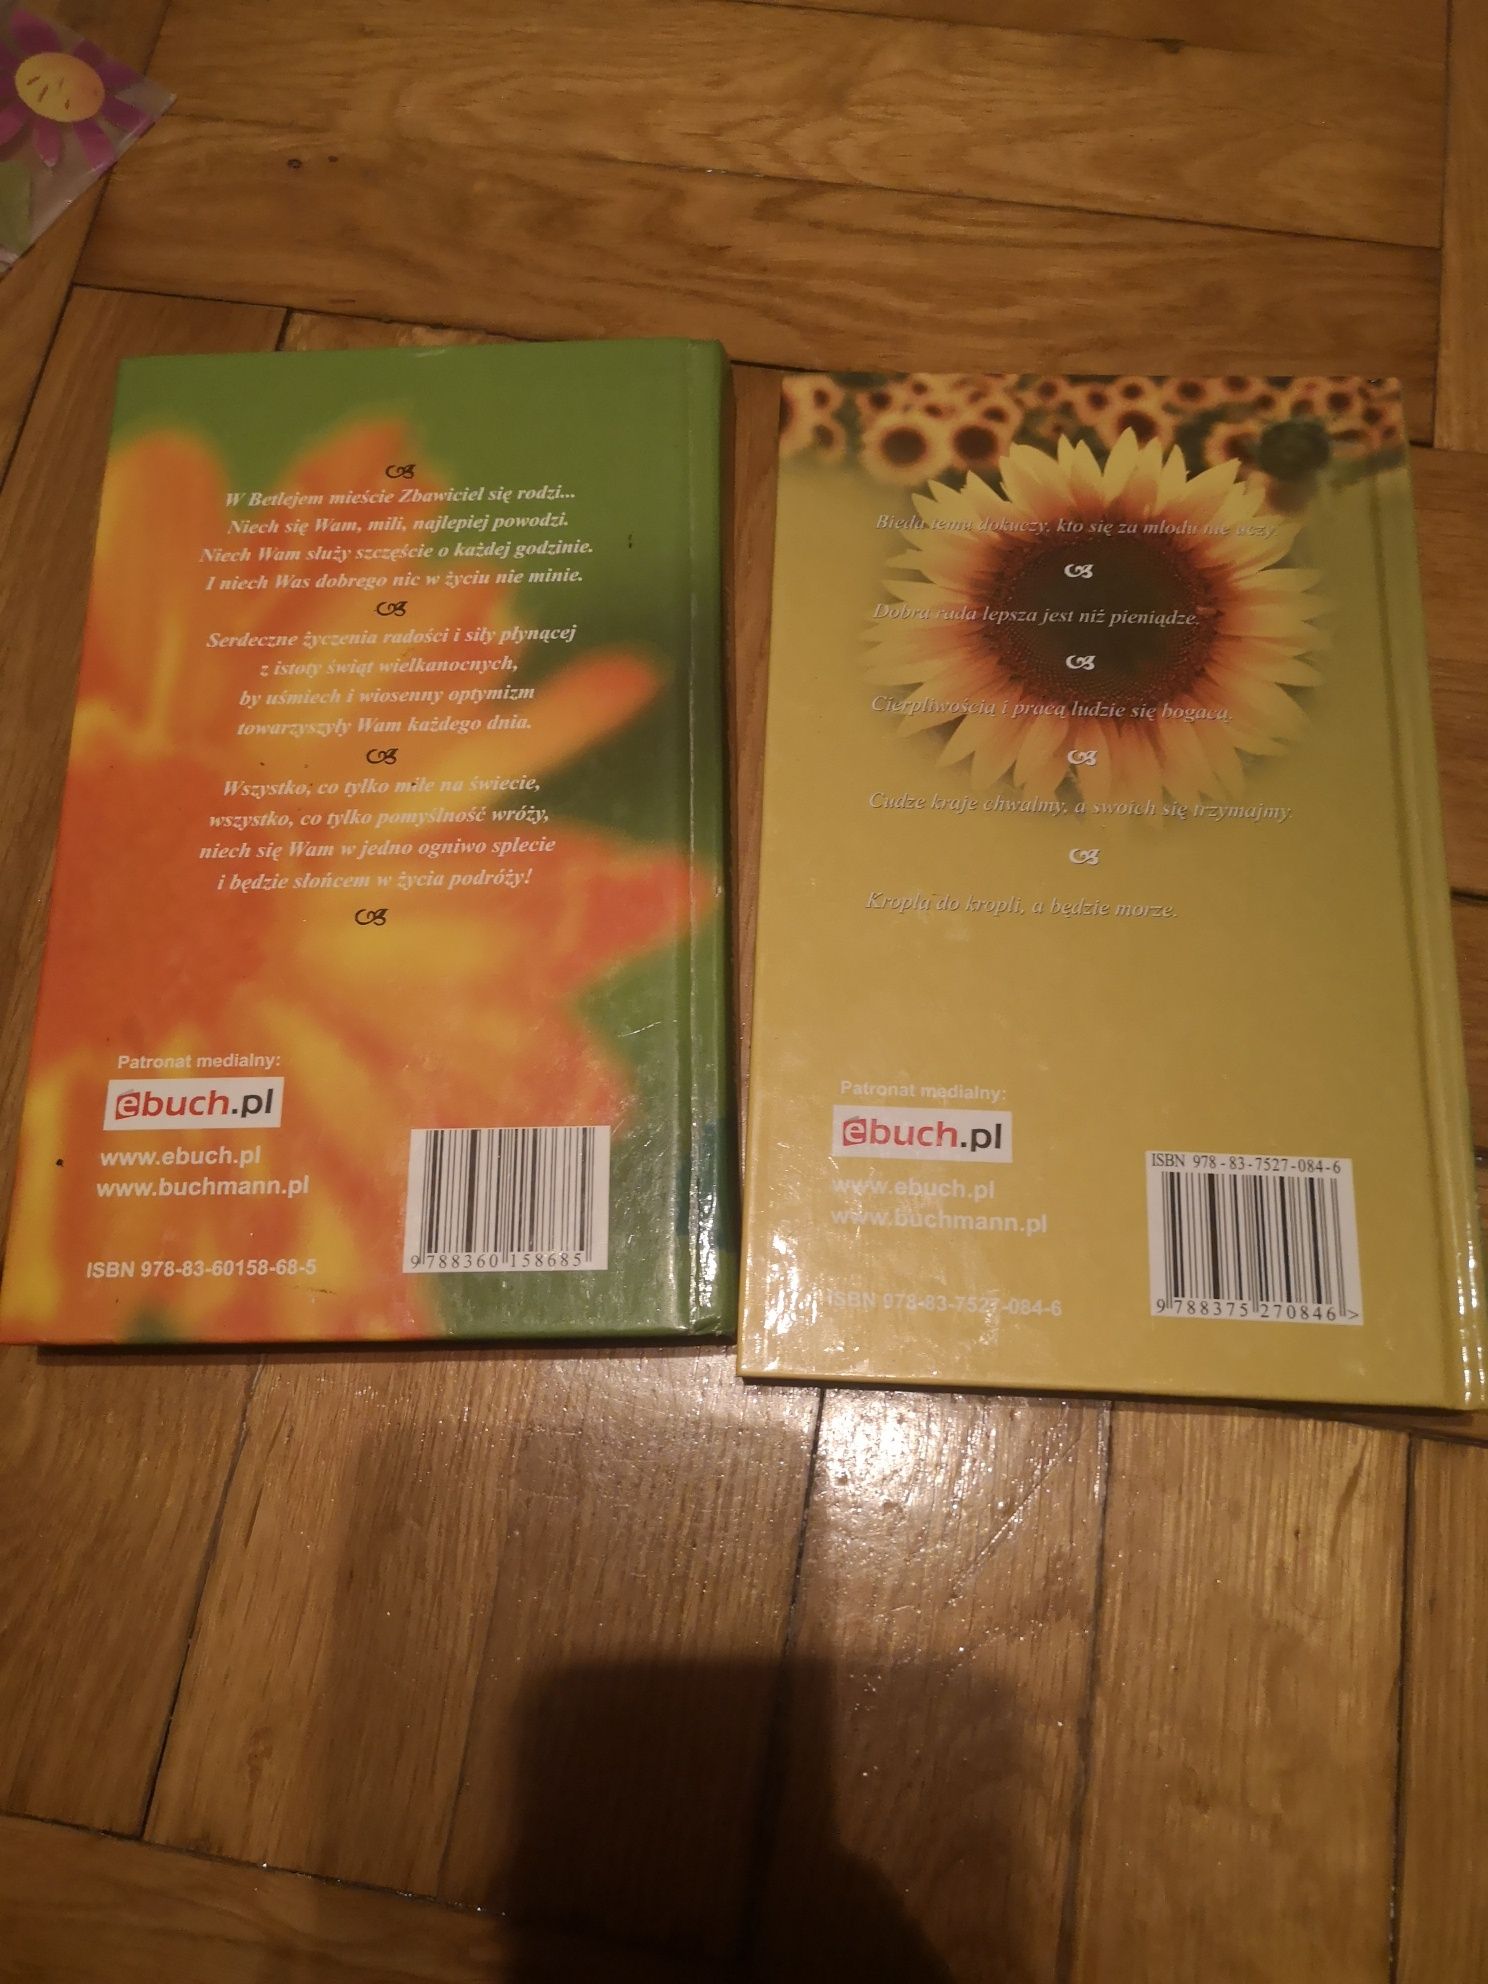 Zestaw książek BUCHMANN "Księga przysłów" "Księga Życzeń i podziękowań